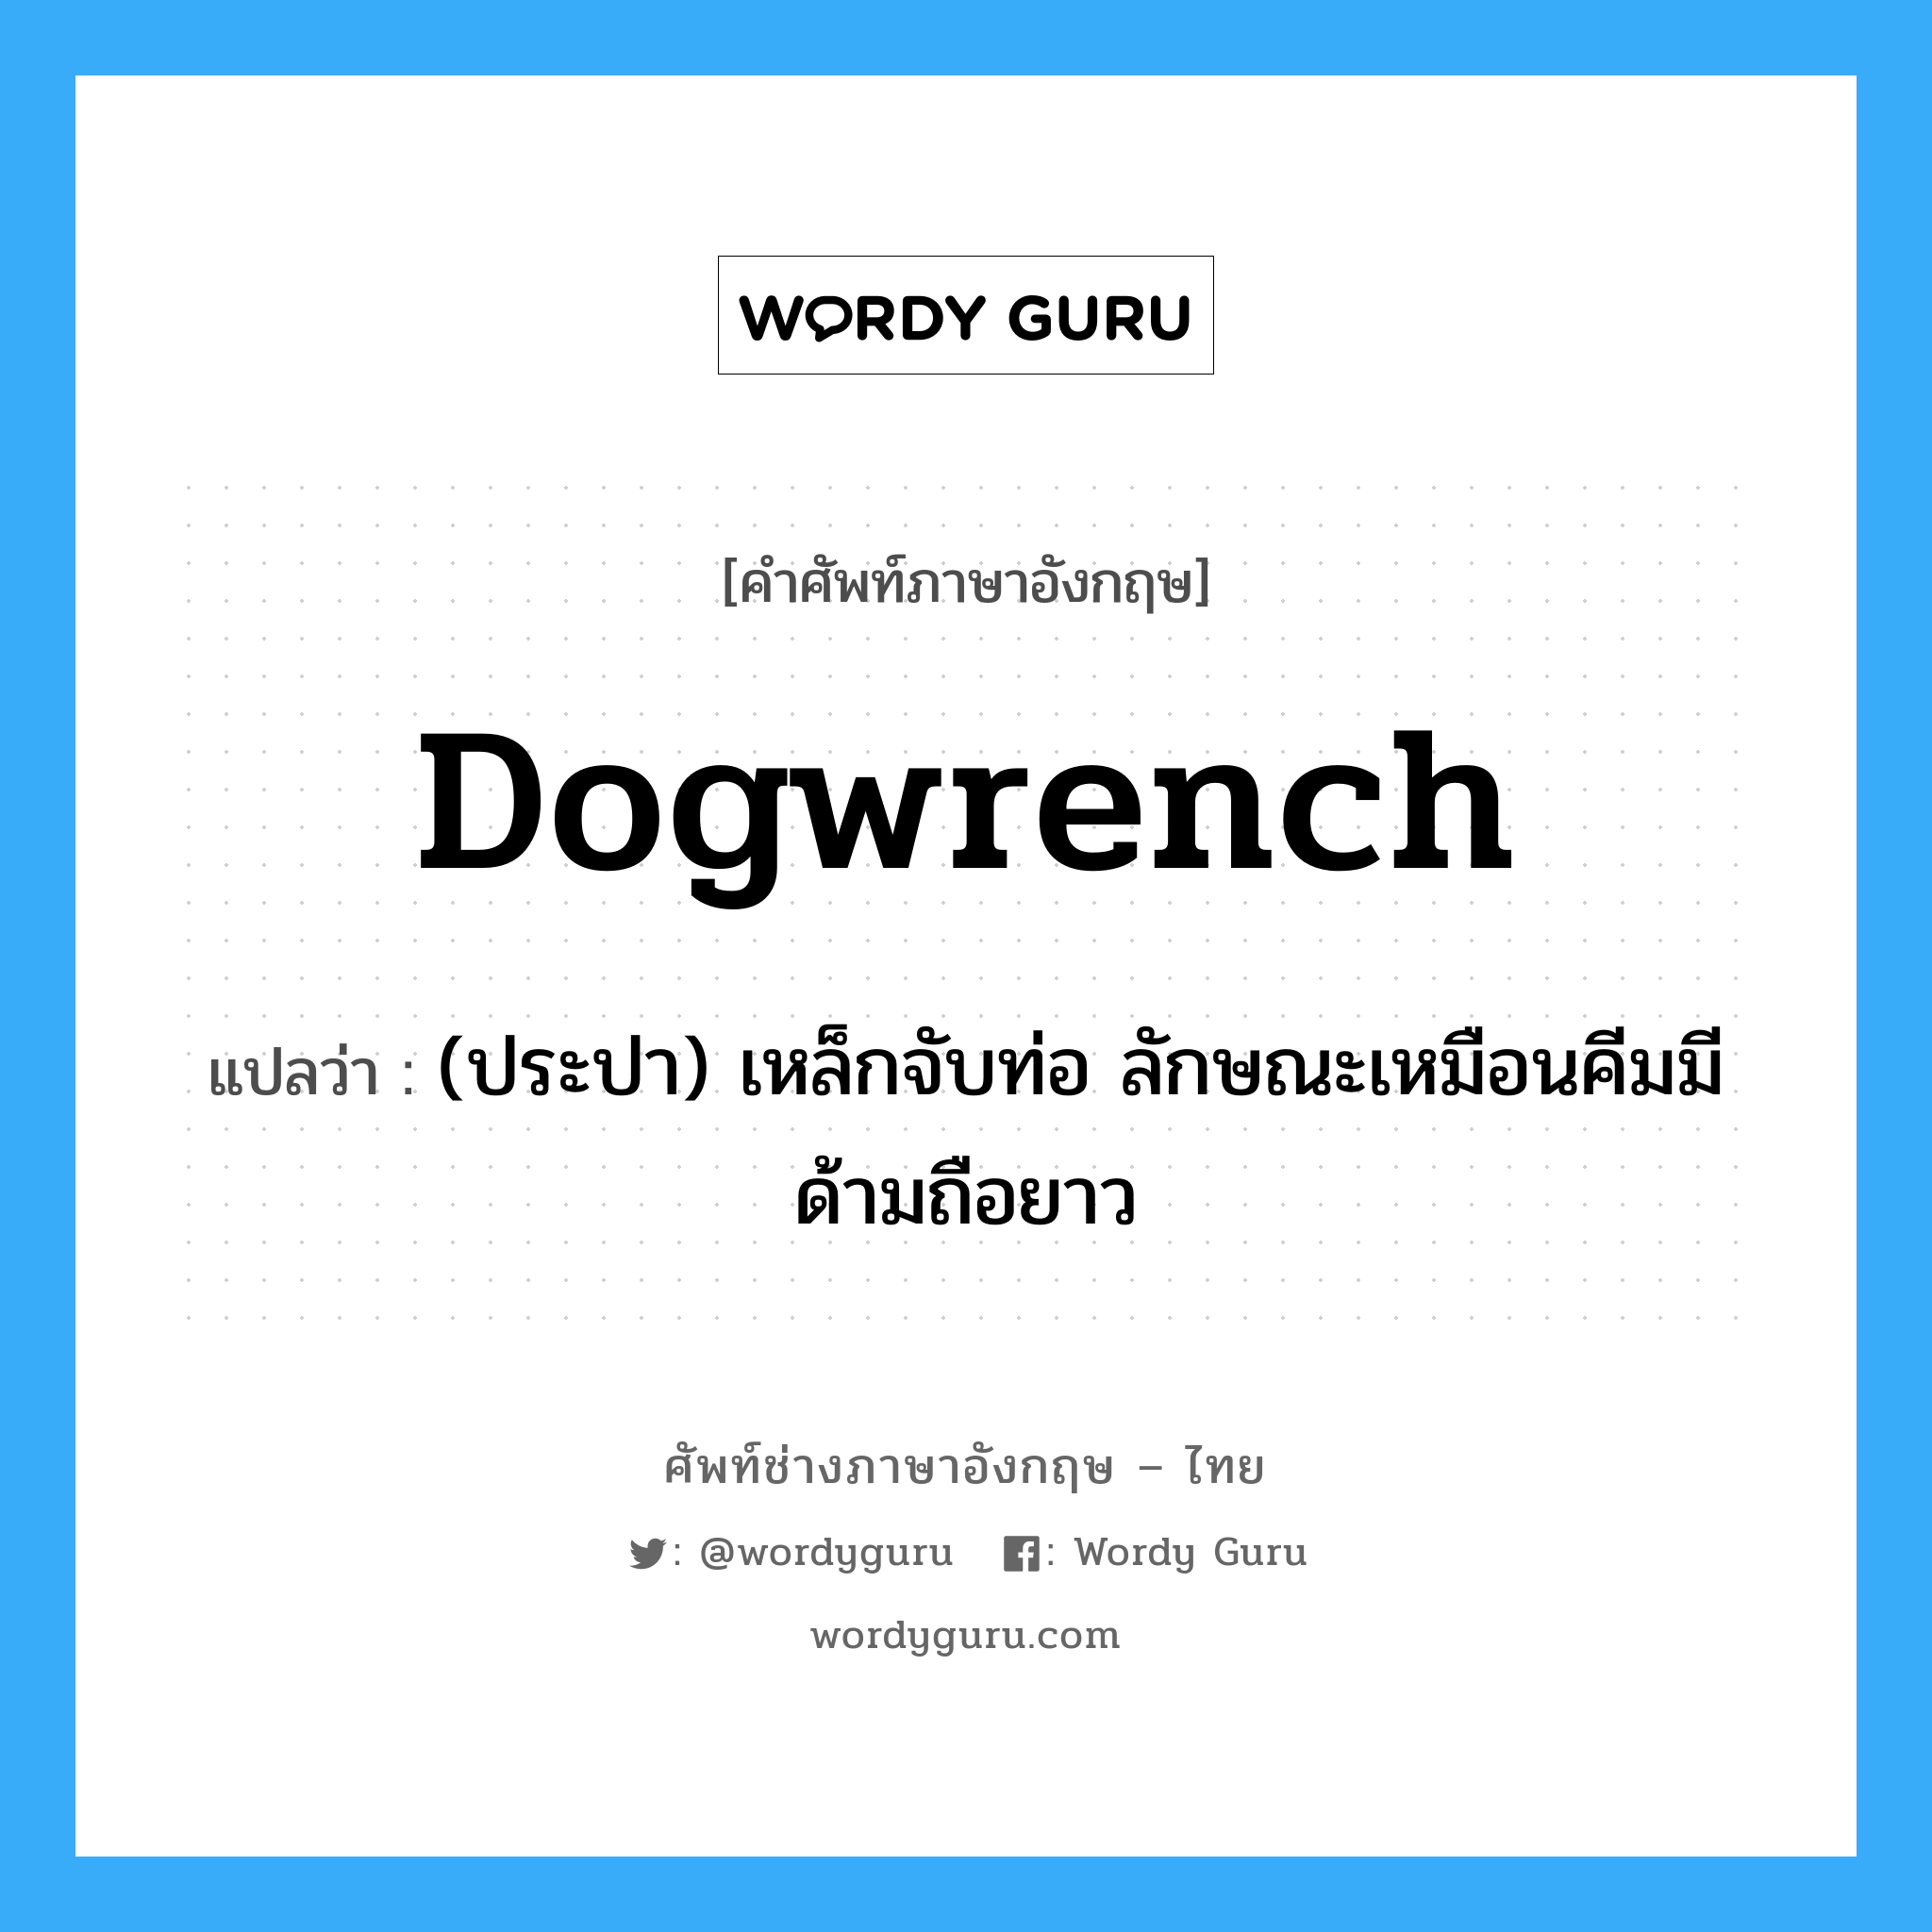 dogwrench แปลว่า?, คำศัพท์ช่างภาษาอังกฤษ - ไทย dogwrench คำศัพท์ภาษาอังกฤษ dogwrench แปลว่า (ประปา) เหล็กจับท่อ ลักษณะเหมือนคีมมีด้ามถือยาว